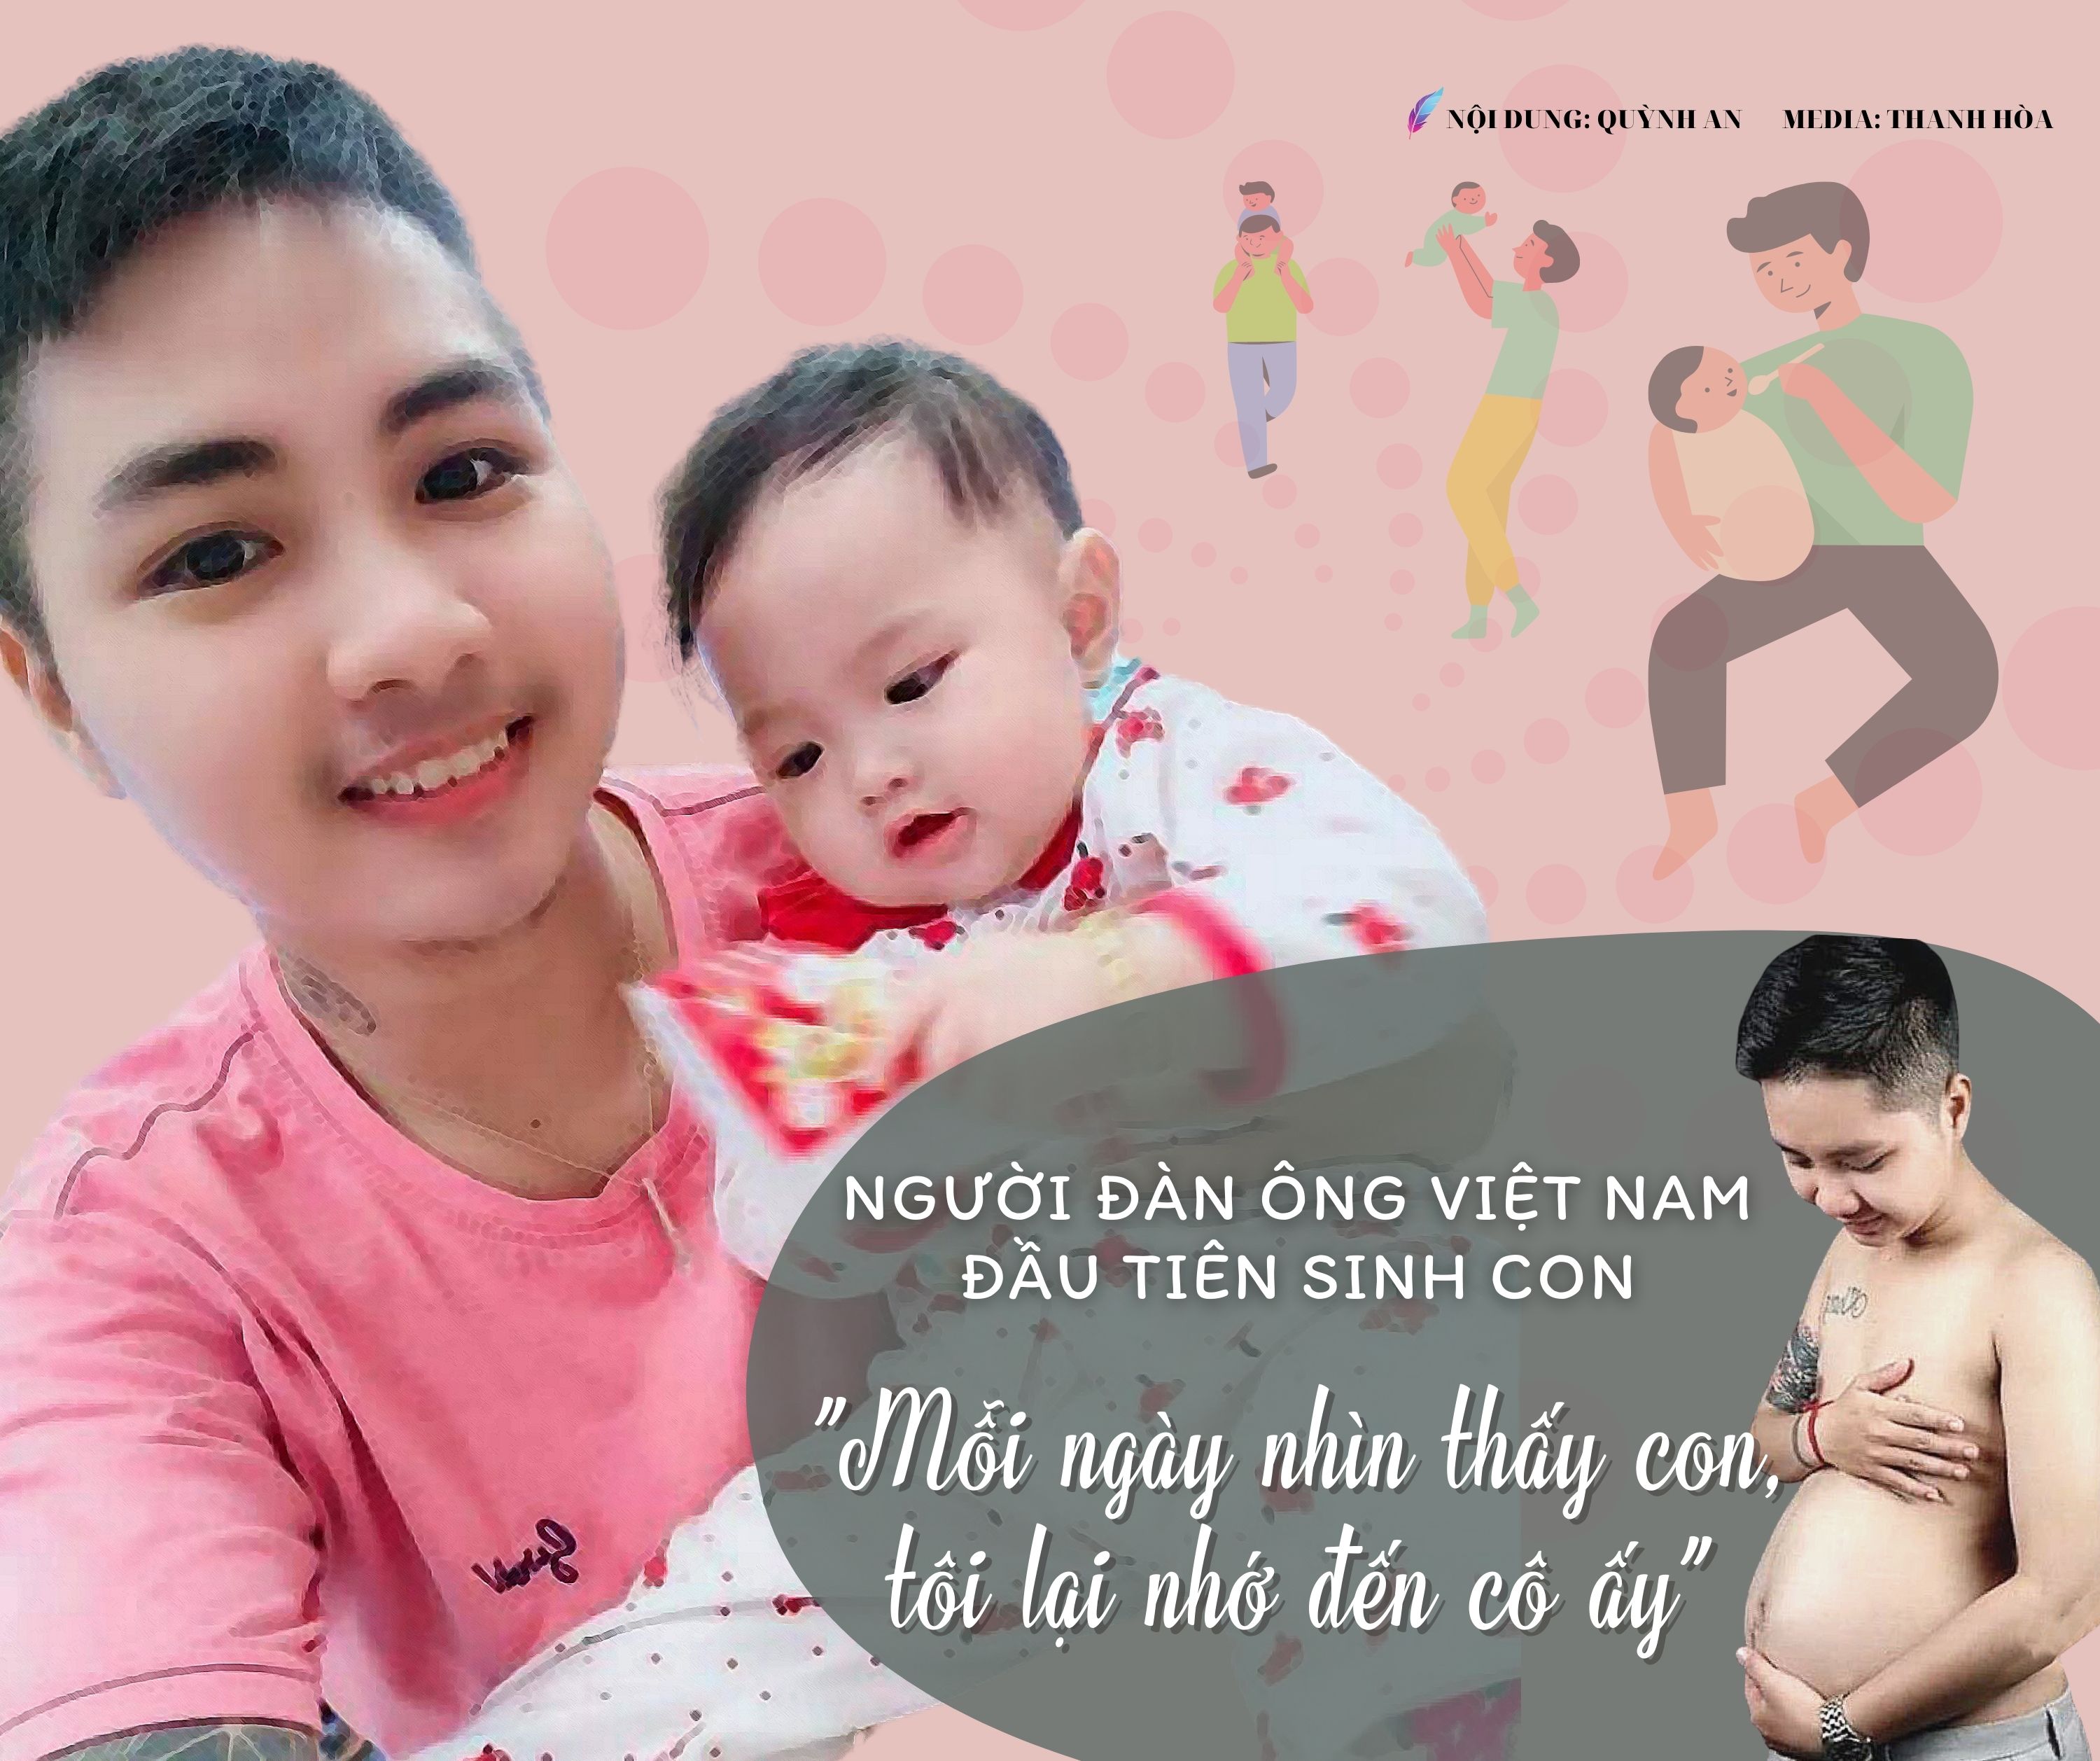 Người đàn ông Việt Nam đầu tiên sinh con: “Mỗi ngày nhìn thấy con, tôi lại nhớ đến cô ấy” - 1